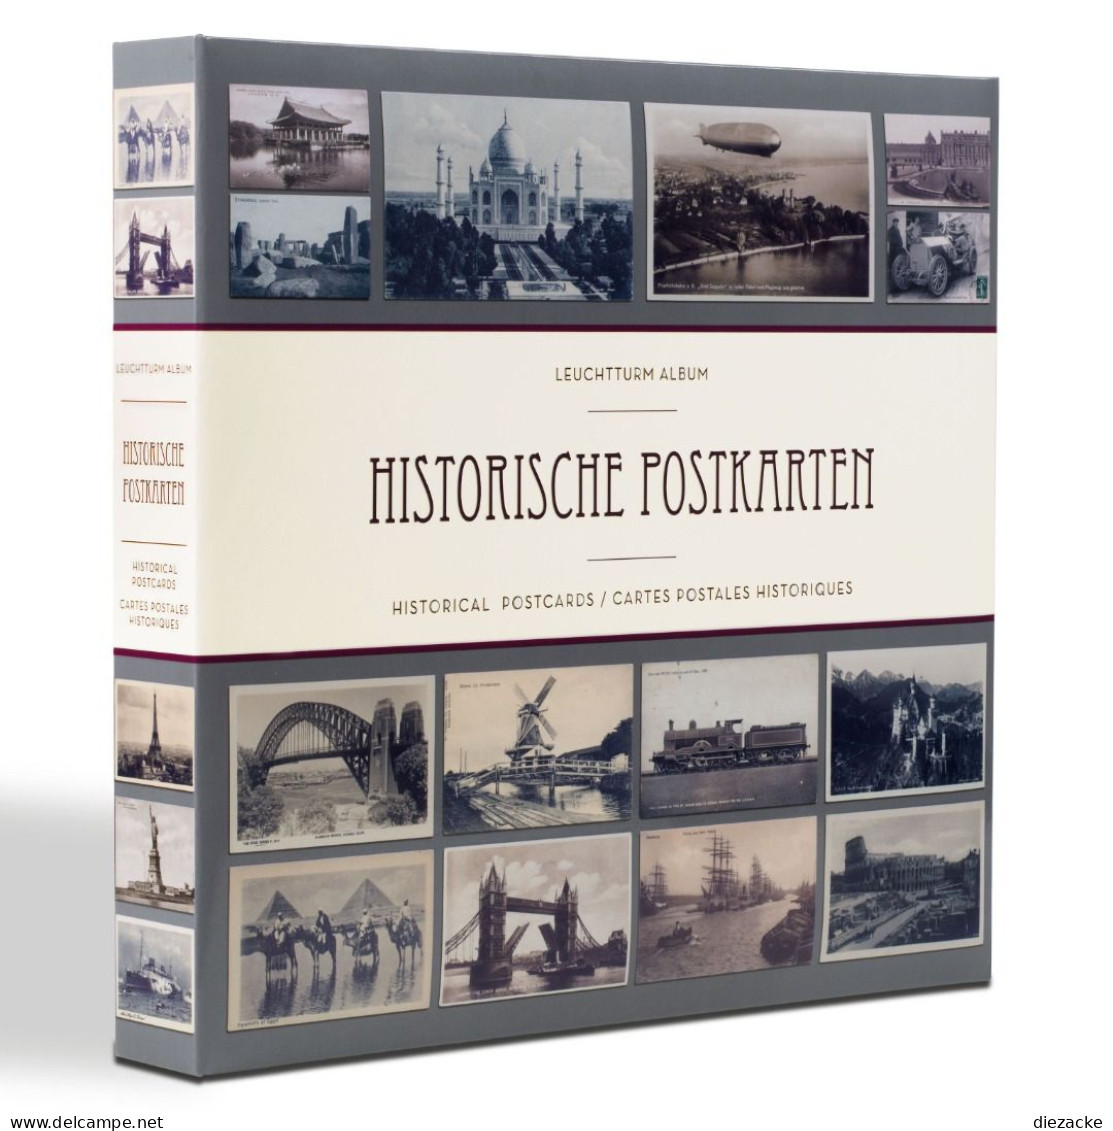 Leuchtturm Postkarten-Album Für 600 Historische Postkarten 348003 Neu ( - Komplettalben